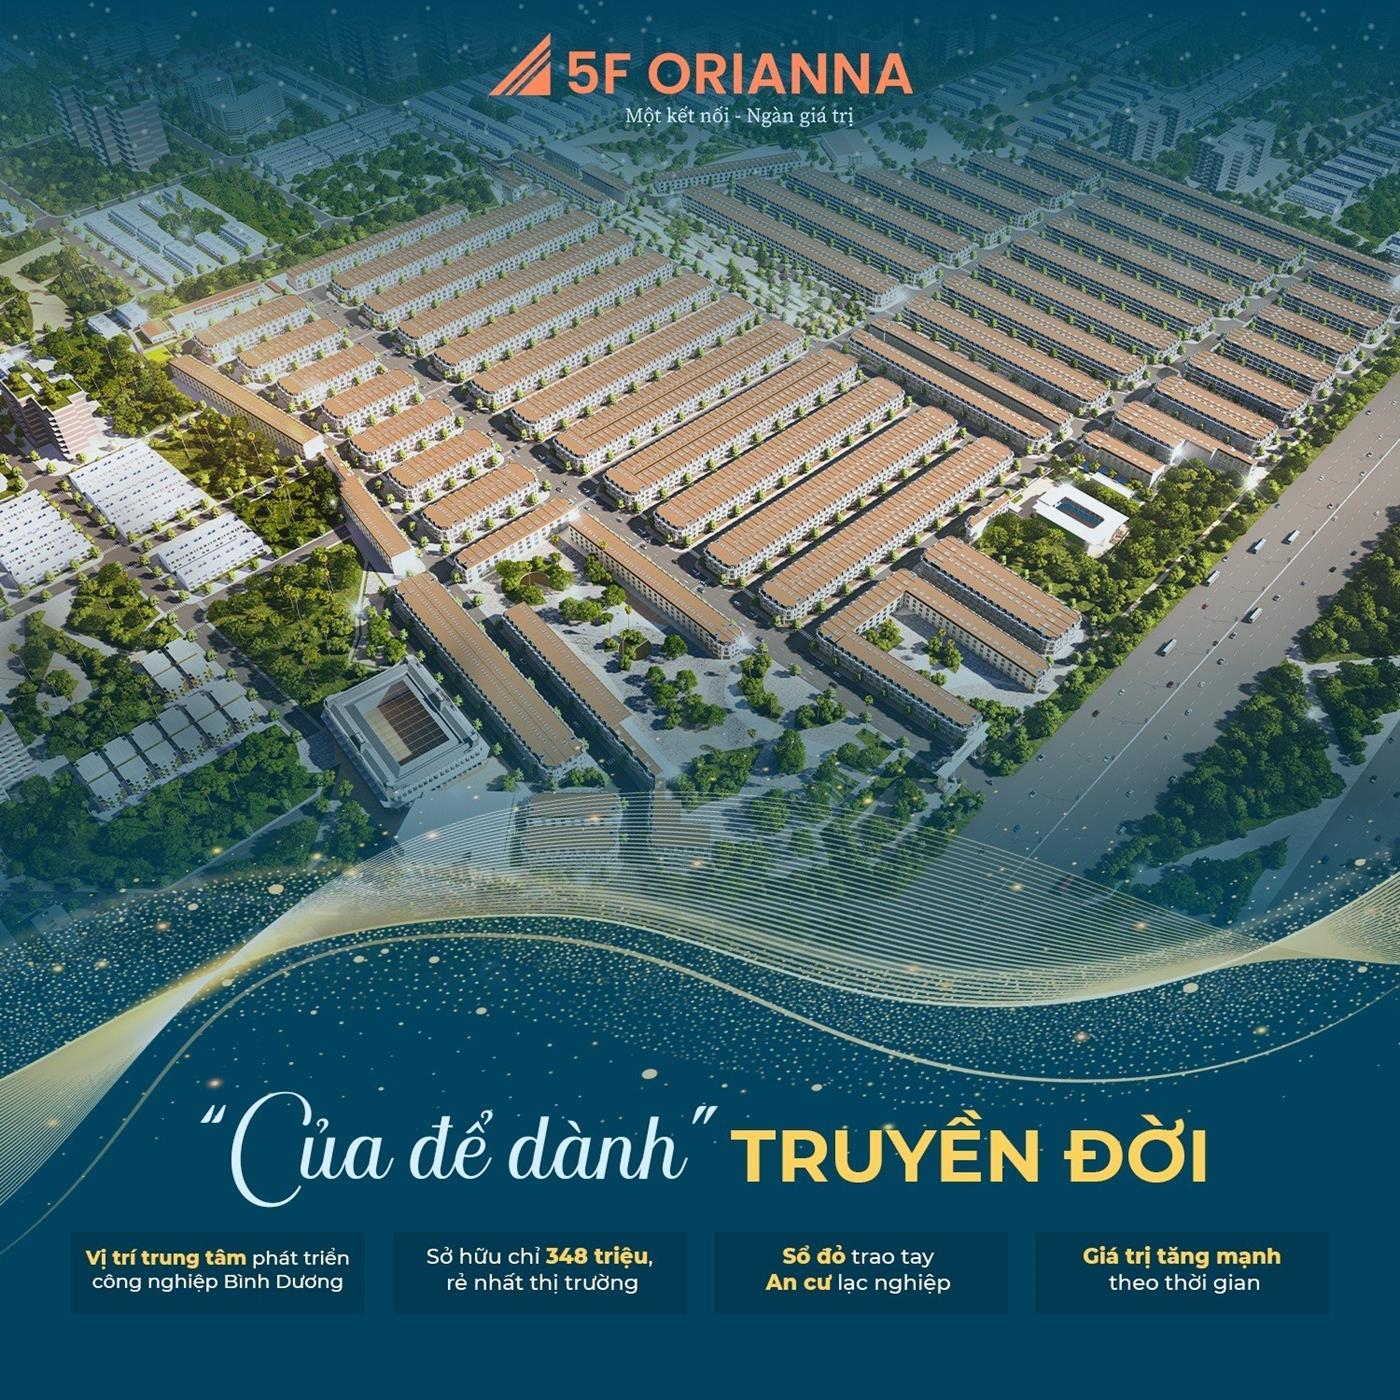 5F Orianna- Khu đô thị Phương Trường An 6 chính thức nhận đăng ký sản phẩm